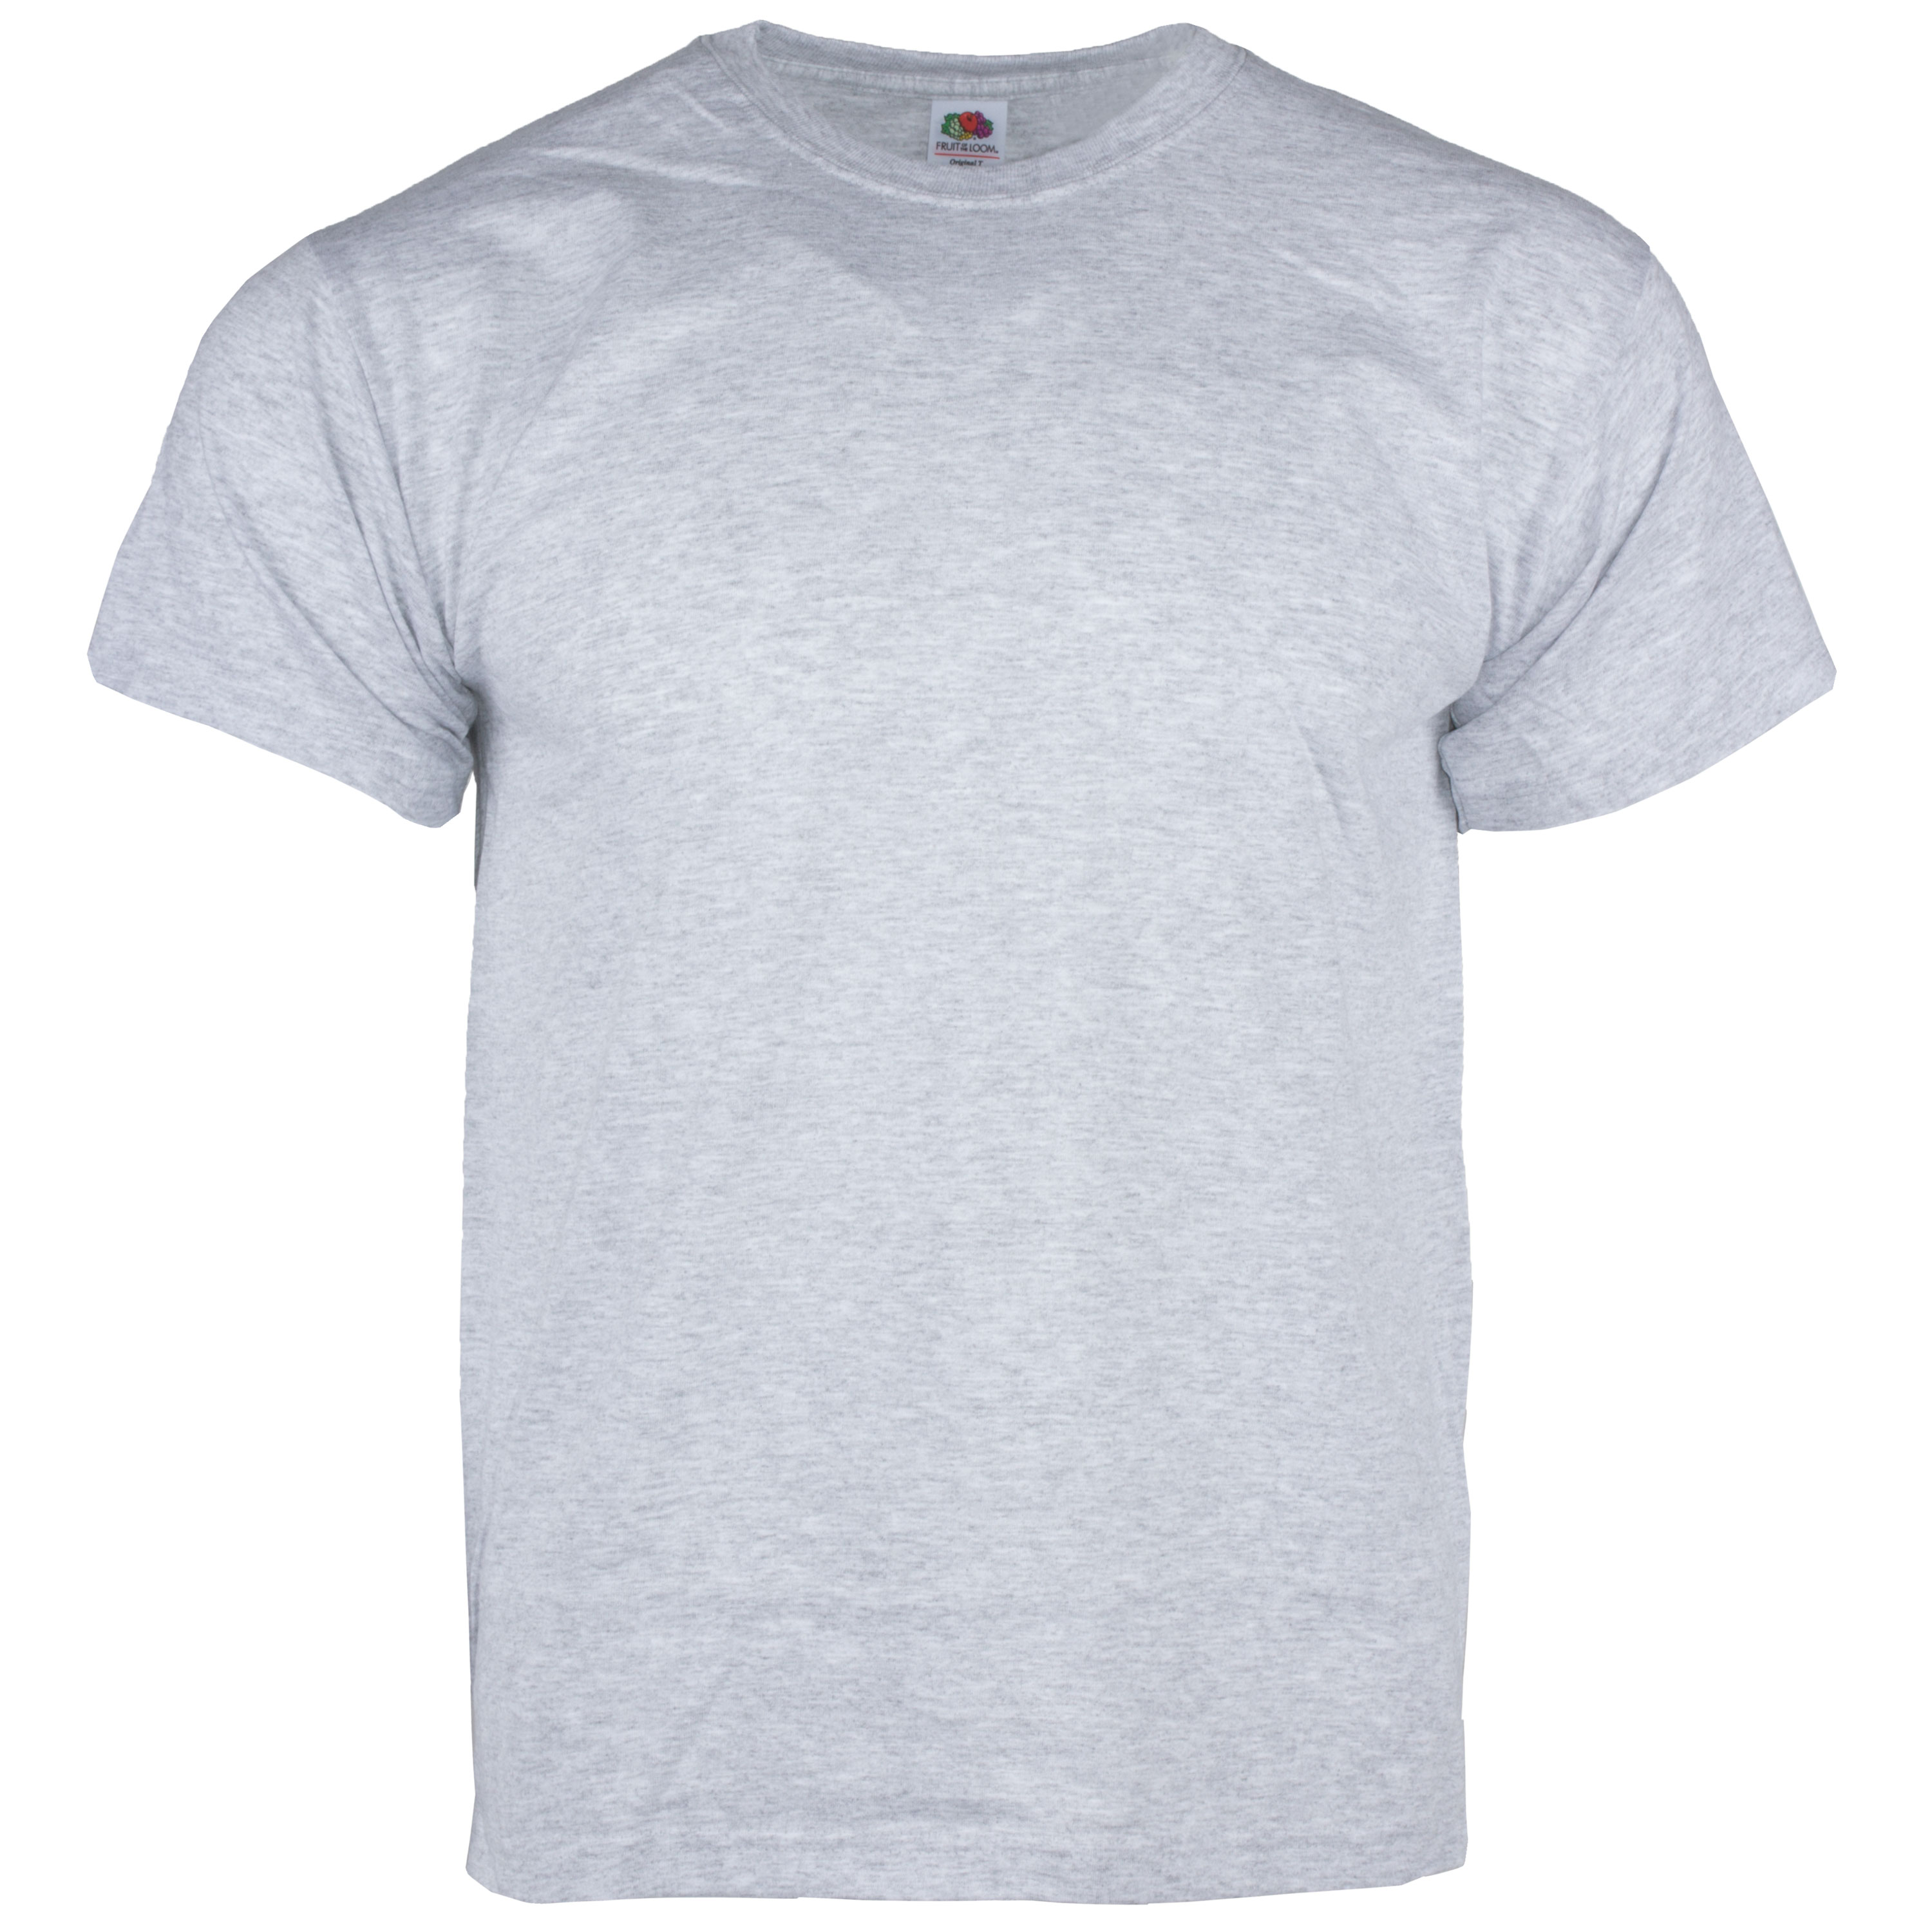 T-Shirt gray | T-Shirt gray | Shirts | Shirts | Men | Clothing